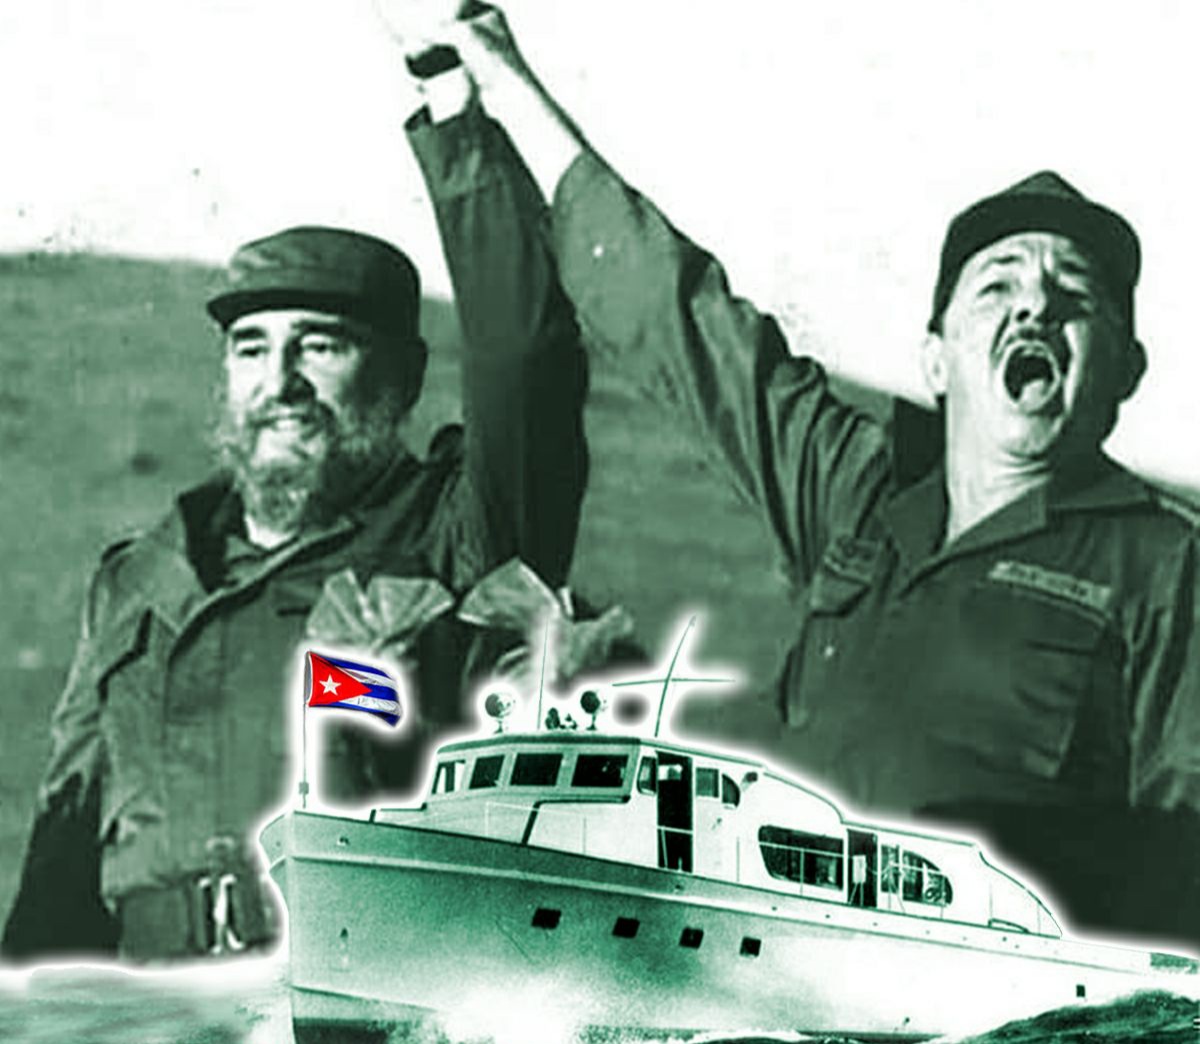 🗣2 de diciembre:  Desembarco del Yate Granma y Día de las FAR. 🇨🇺🇨🇺🇨🇺🇨🇺
Rendimos homenaje a aquellos que hicieron posible un capítulo crucial en la historia cubana y a quienes, siguen de verde olivo manteniendo el espíritu del #PuebloUniformado. 
#FidelPorSiempre